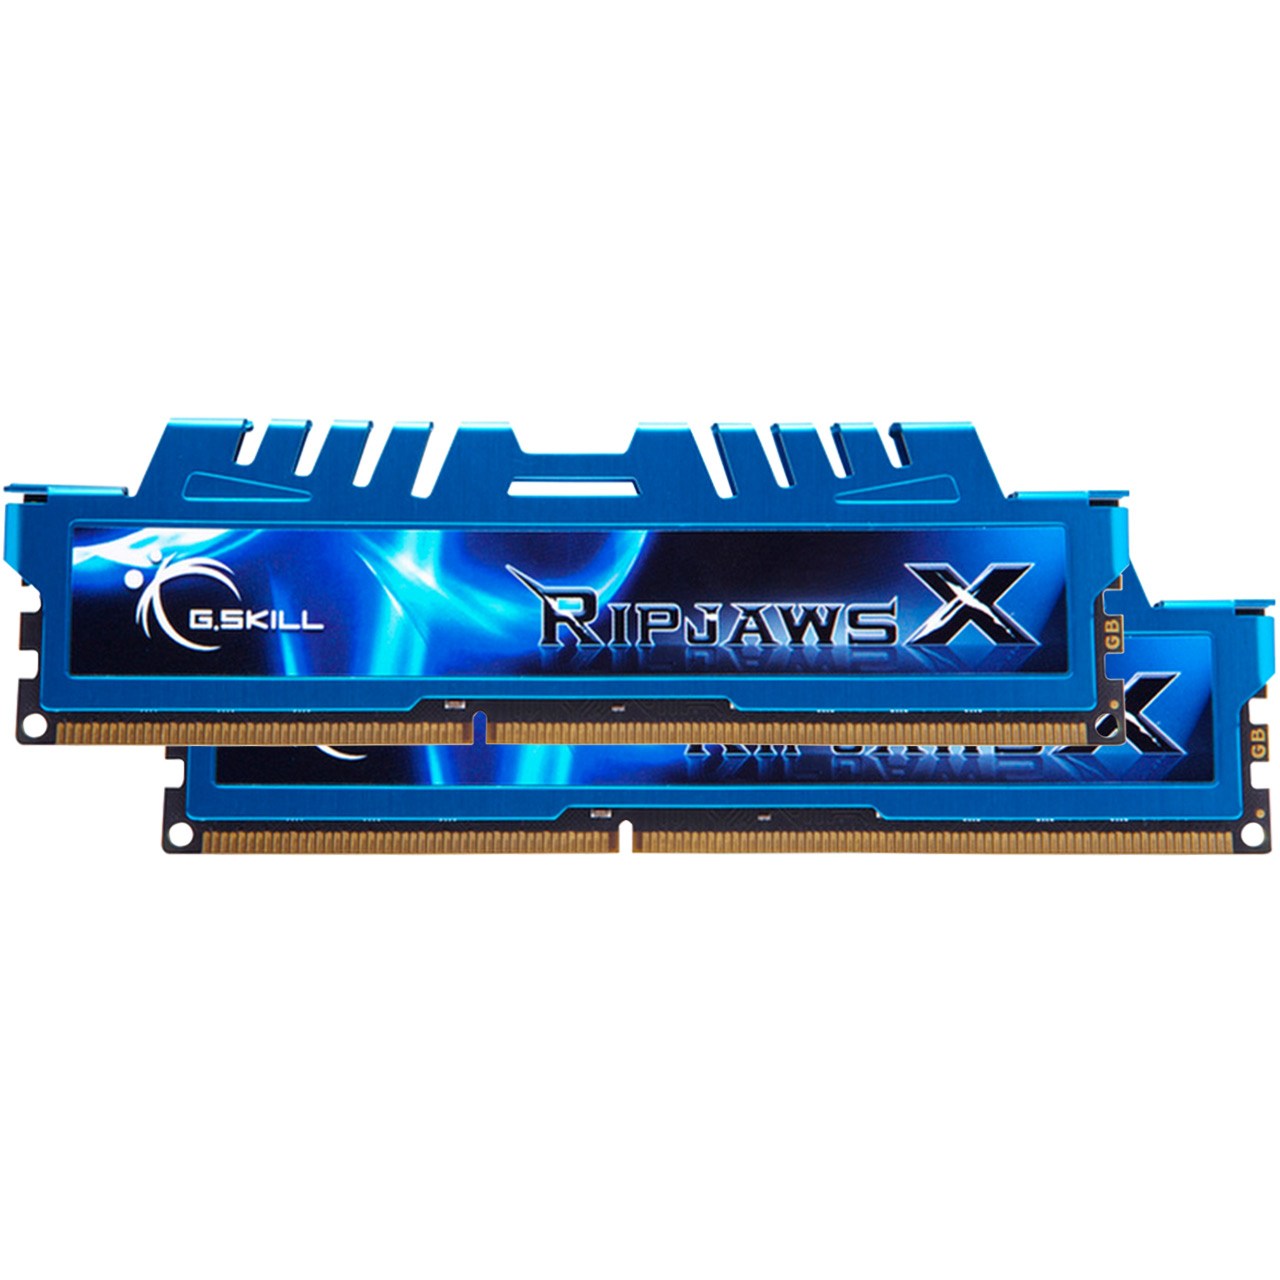 رم دسکتاپ DDR3 دو کاناله 2400 مگاهرتز CL11 جی اسکیل مدل Ripjaws X ظرفیت 8 گیگابایت